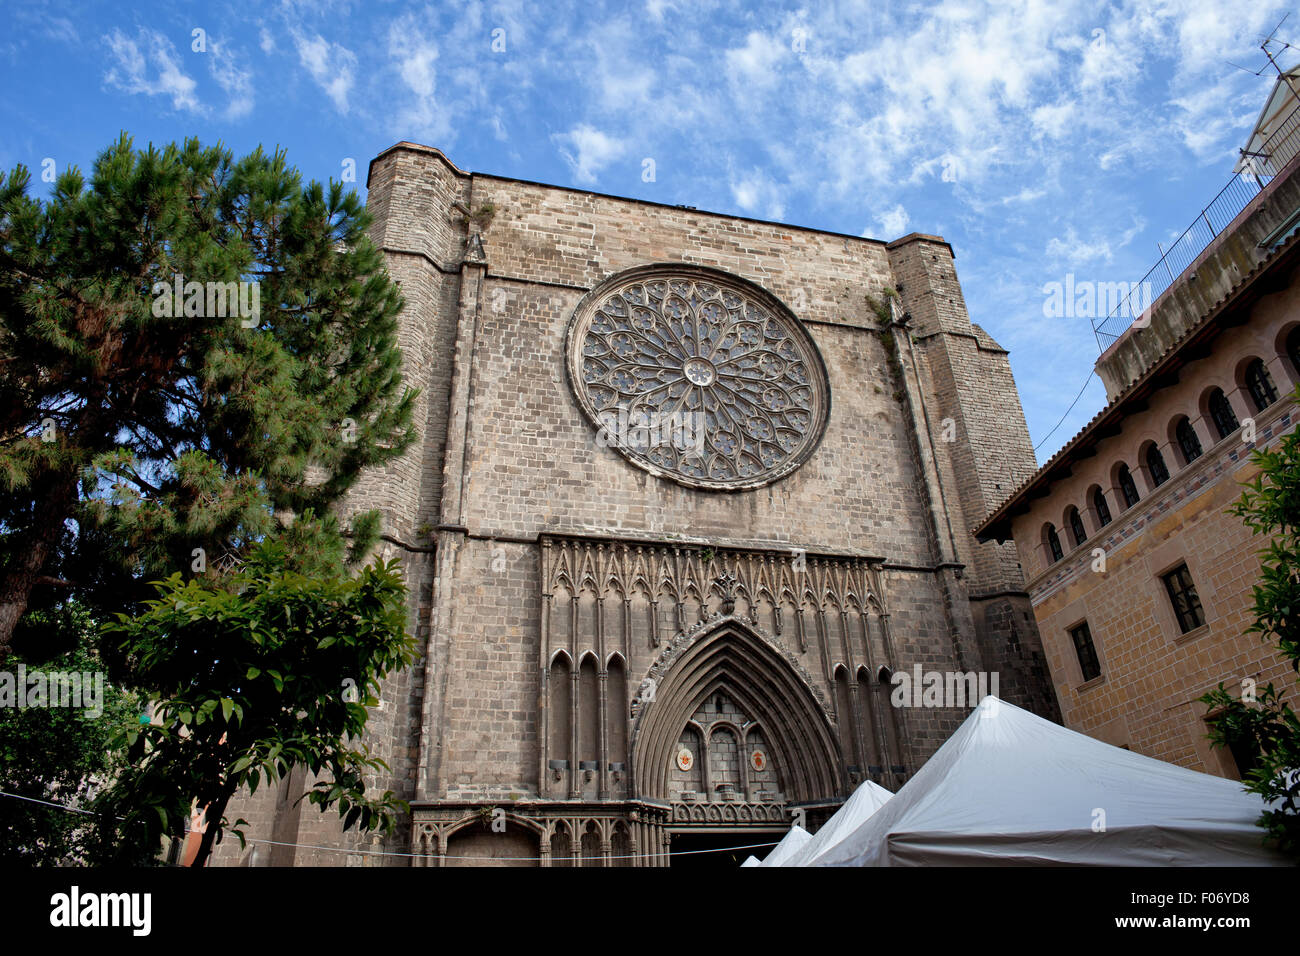 Basílica de Santa Maria del Pi en Barcelona, Cataluña, España, del siglo xiv, la arquitectura de estilo gótico catalán. Foto de stock